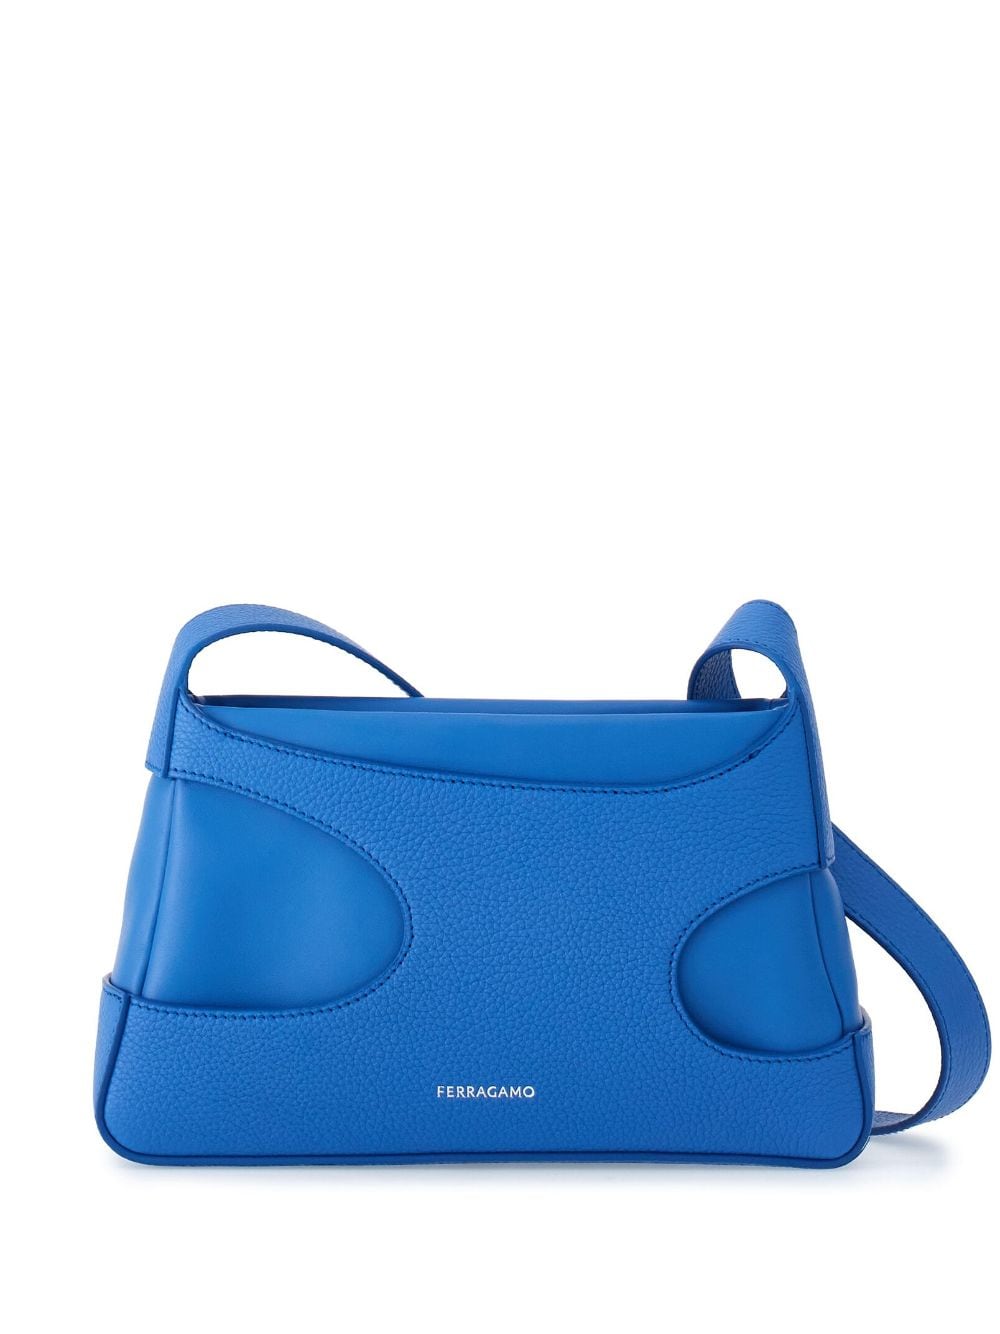 Ferragamo cut-out detailing leather mini bag - Blue